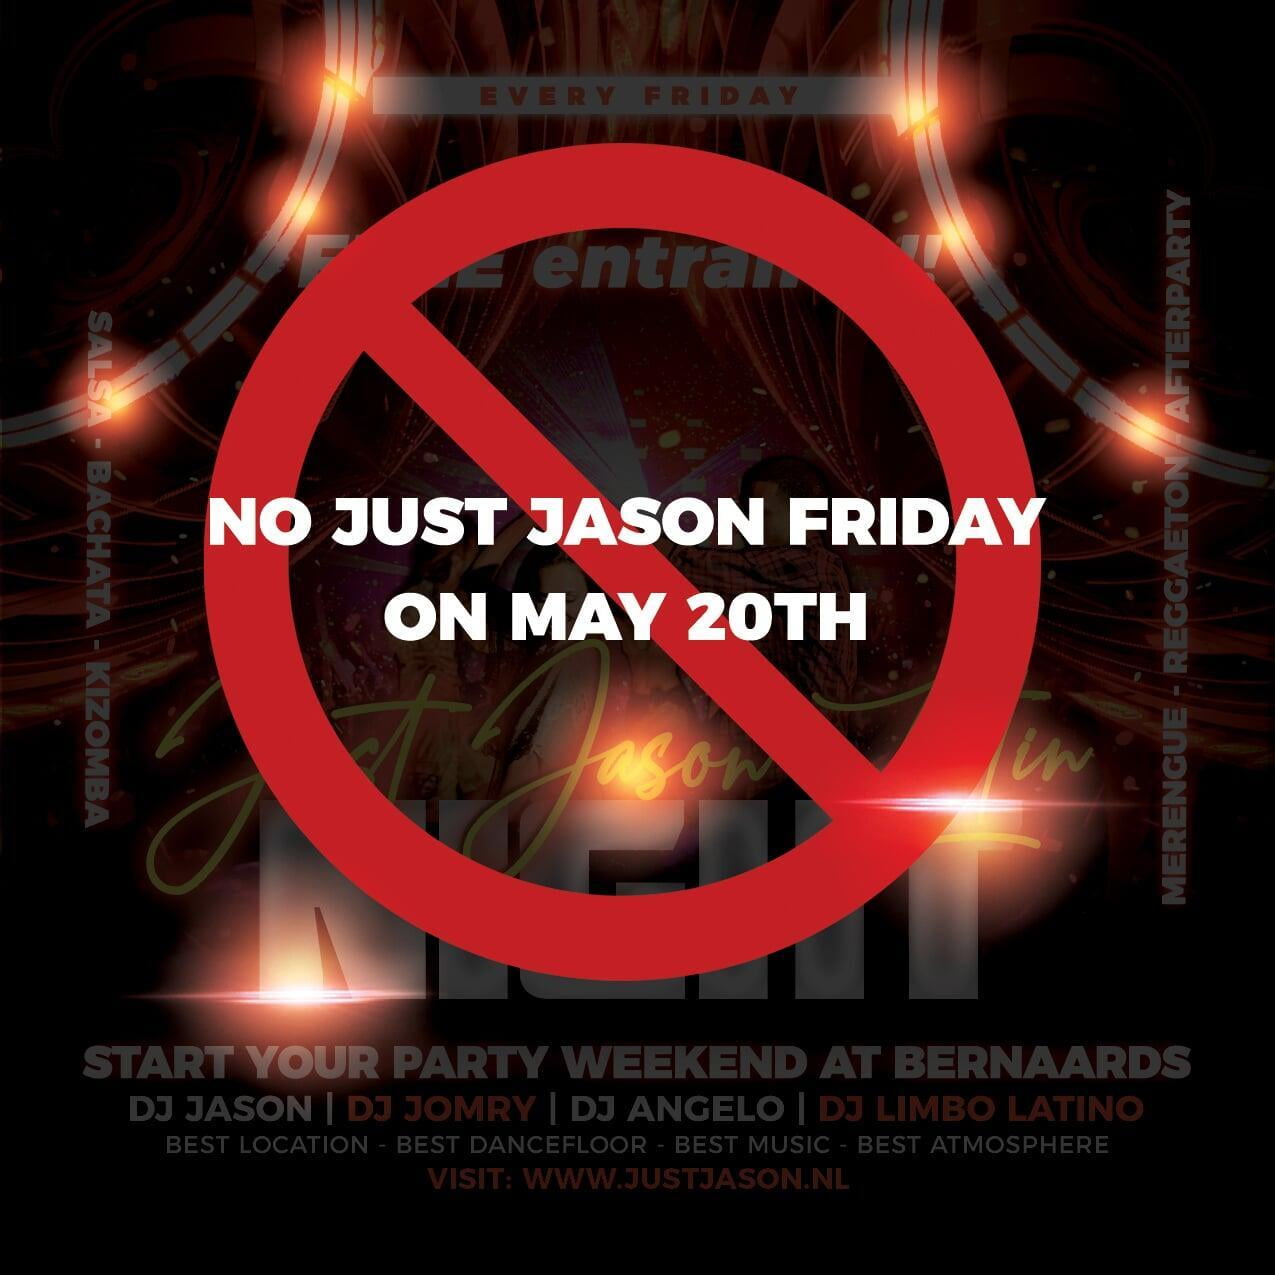 No Just Jason Friday on May 20th